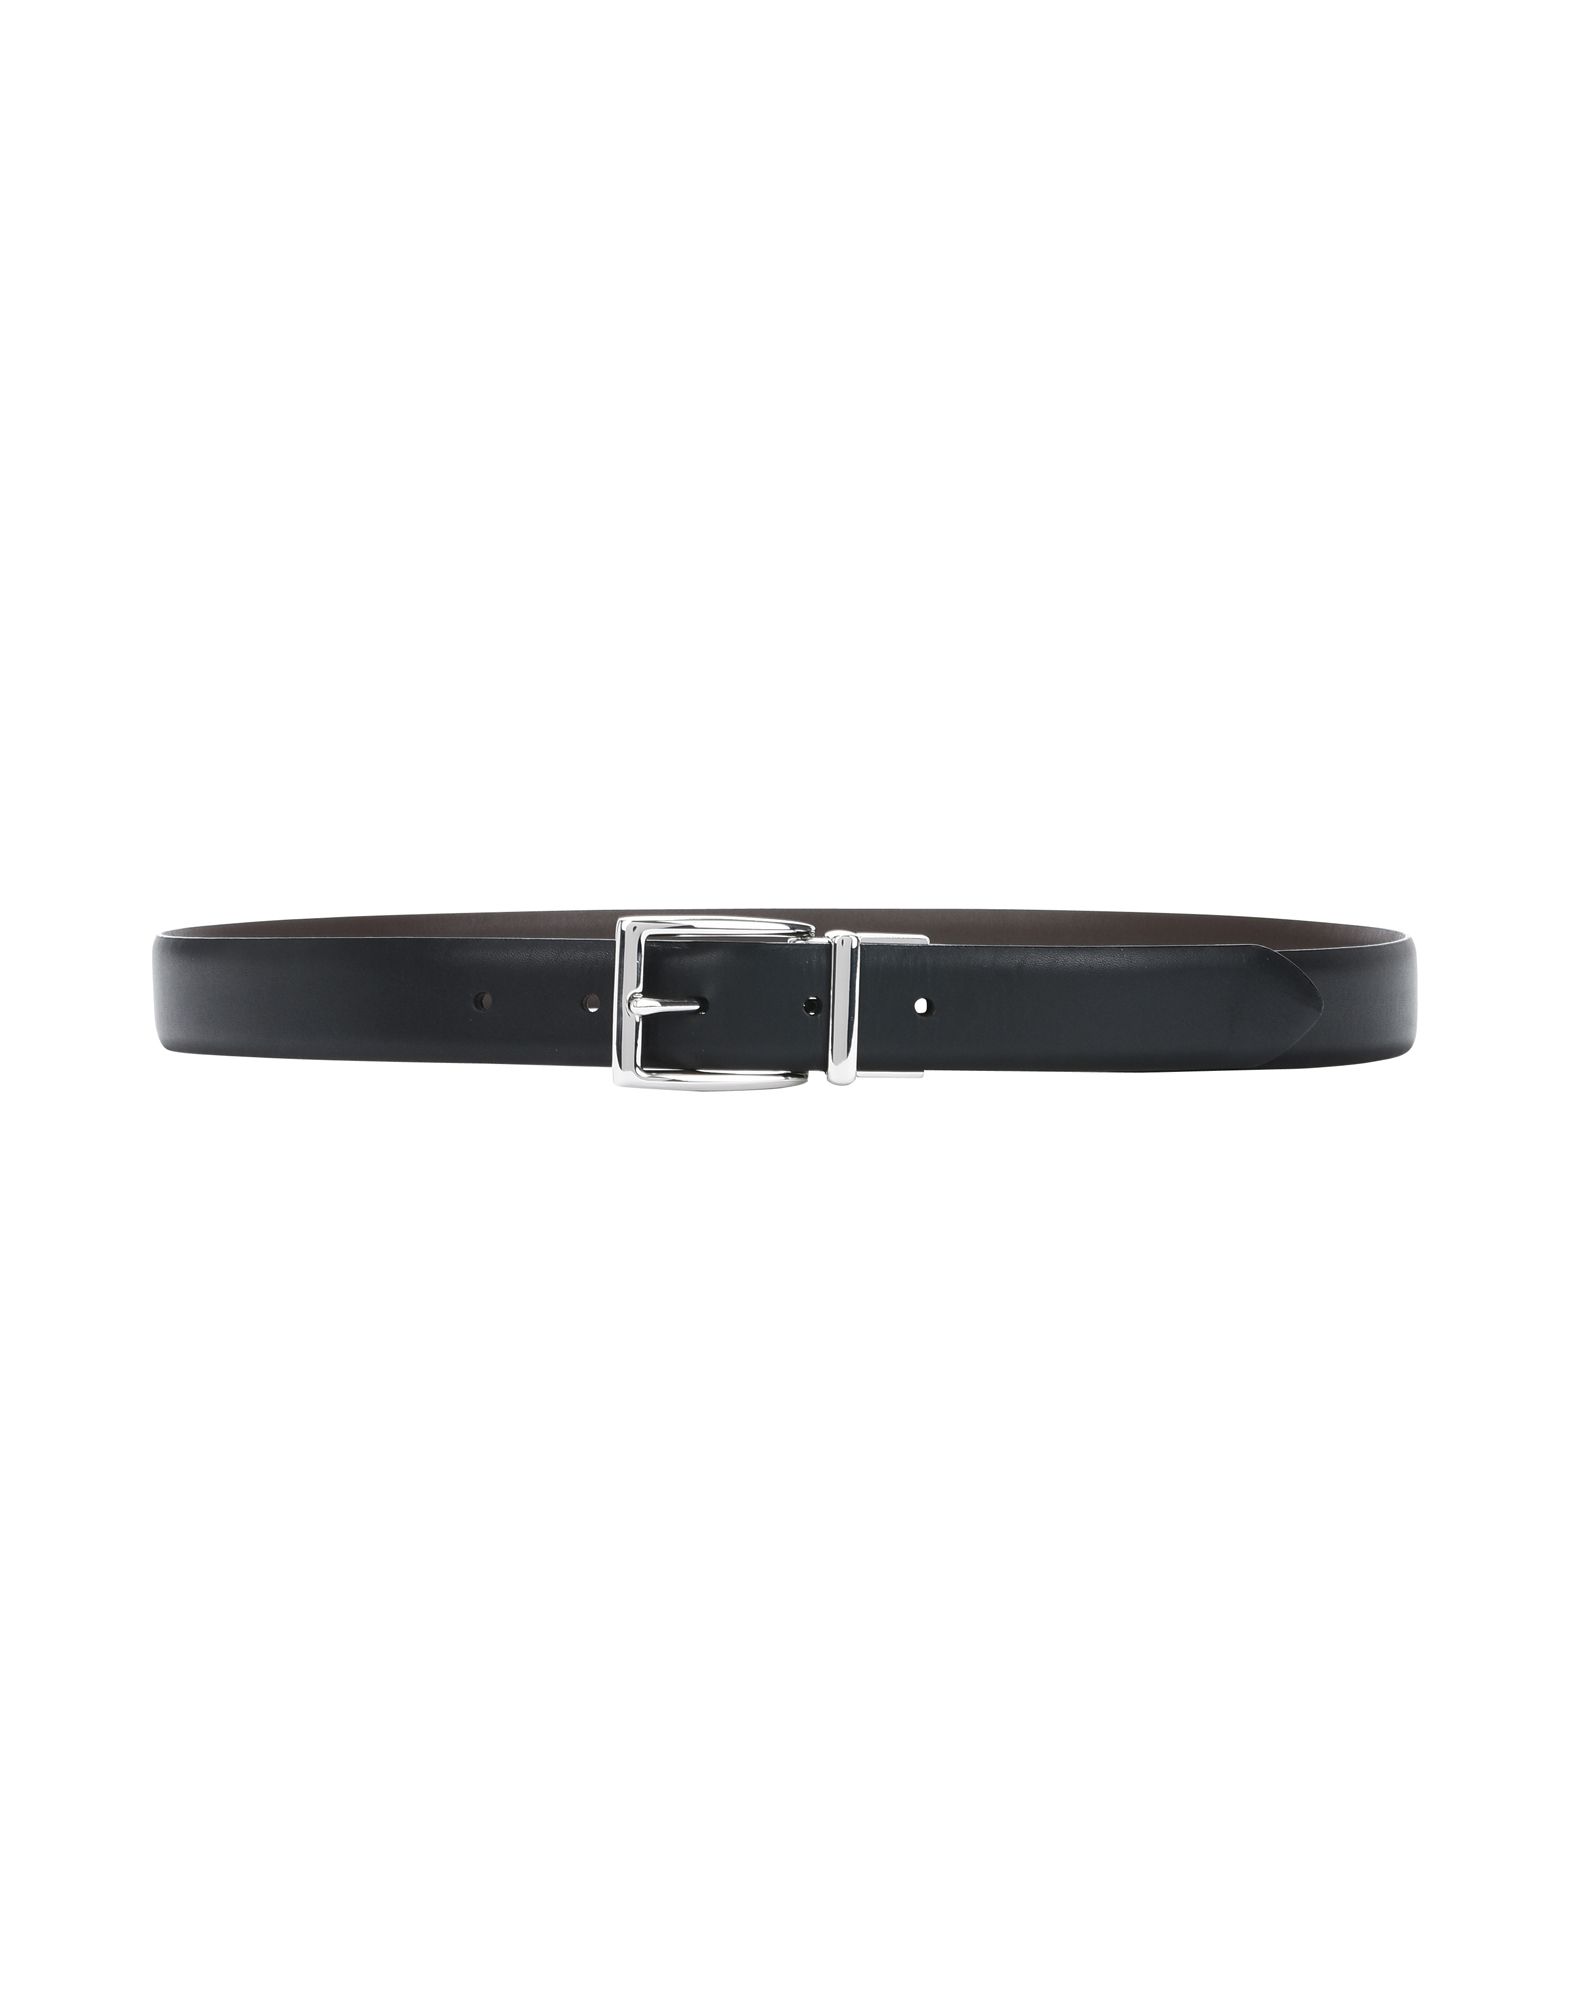 《送料無料》POLO RALPH LAUREN メンズ ベルト ダークブラウン 36 革 100% Leather Belt with reversible buckle